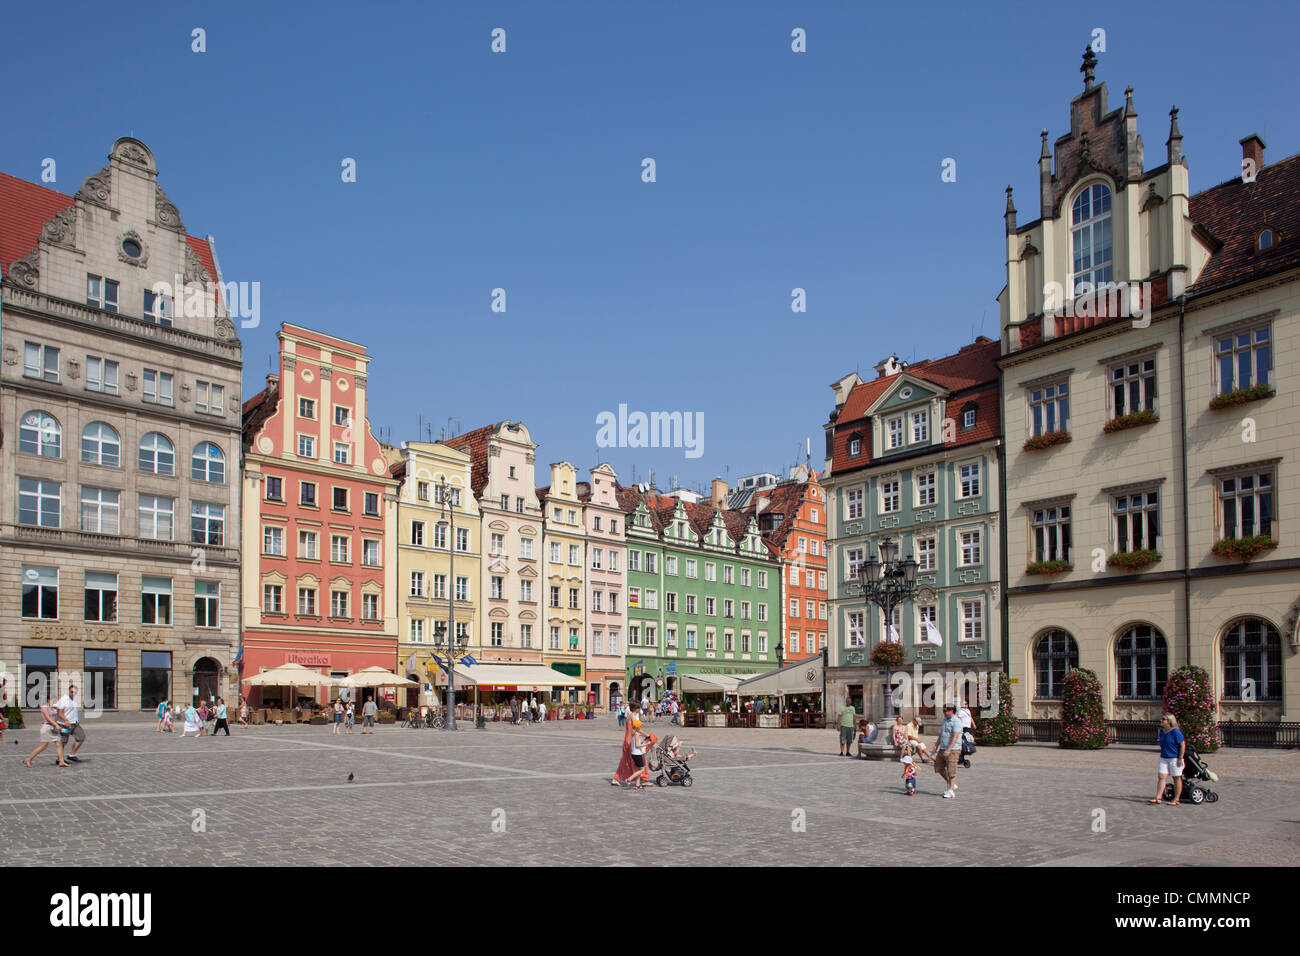 Market Square, Old Town, Wroclaw, Silesia, Poland, Europe Stock Photo